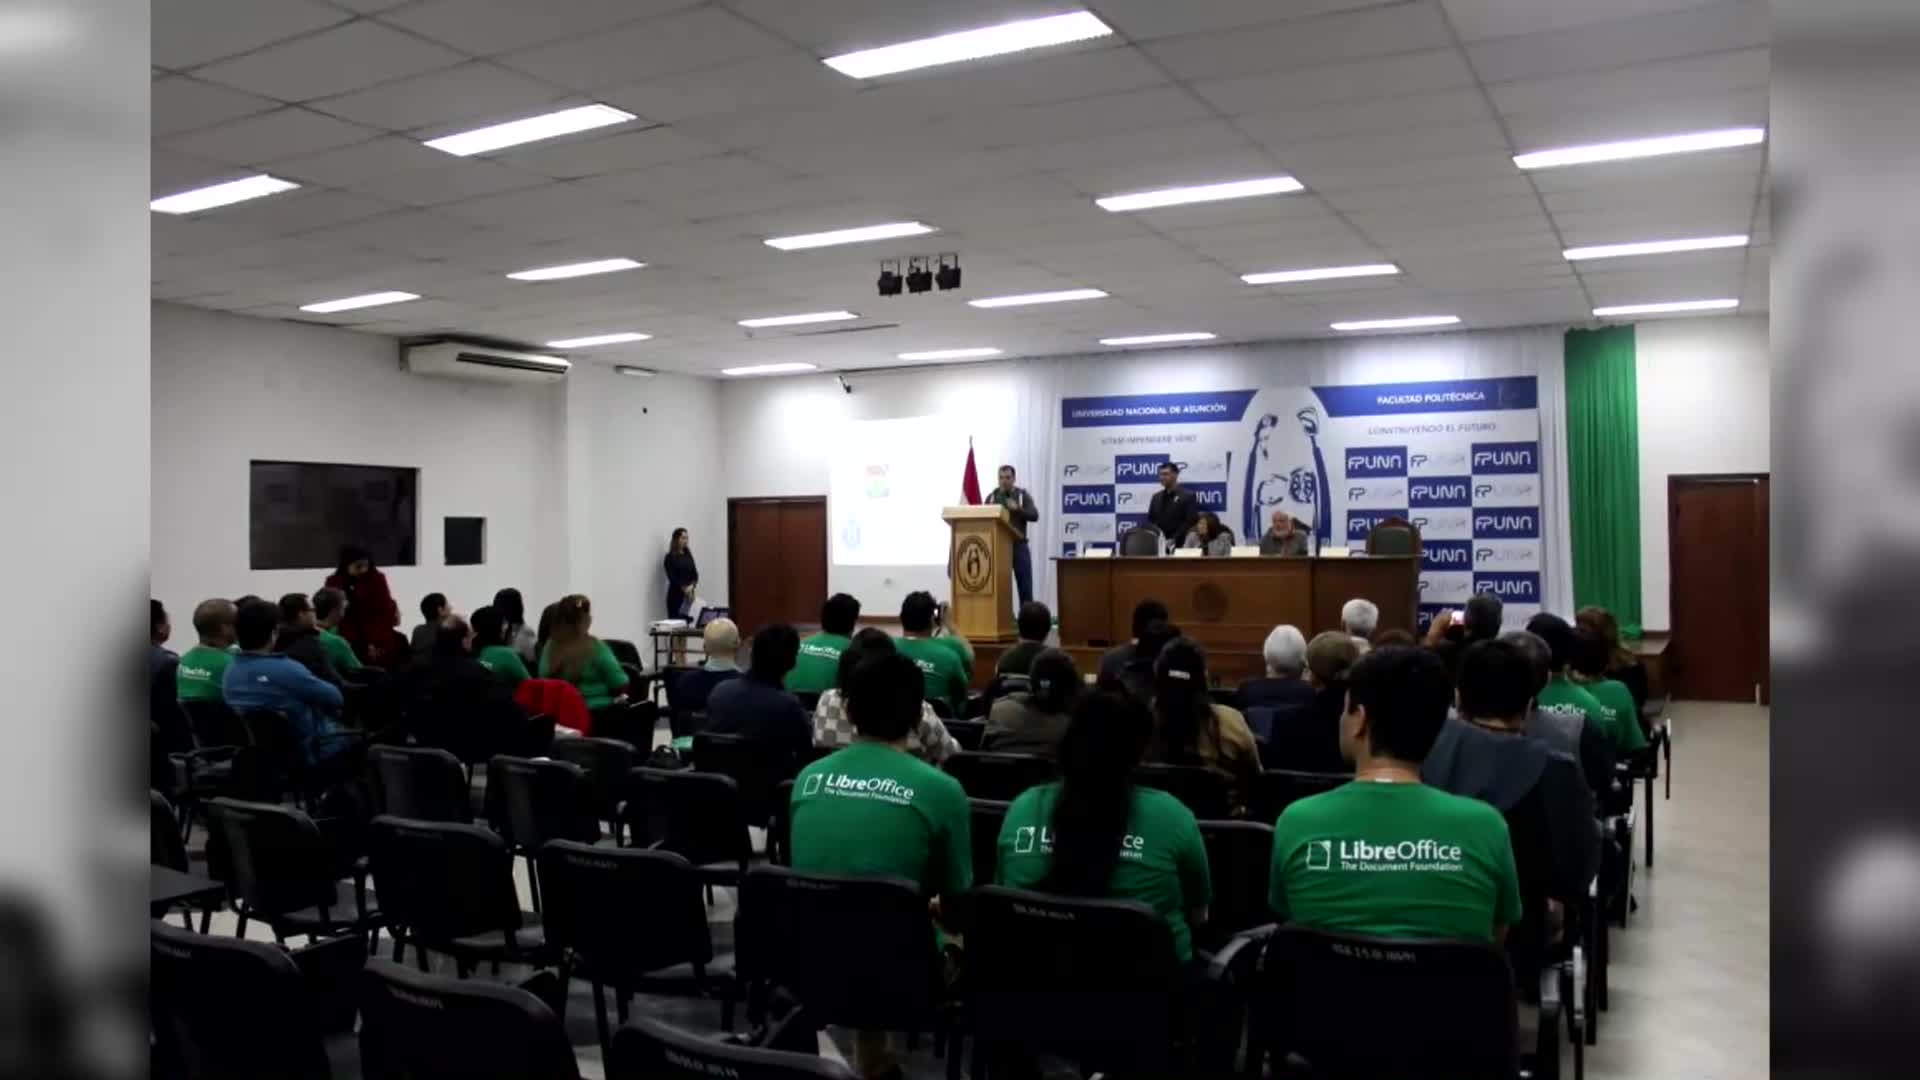 Realizaron la primera Conferencia Latinoamericana de Software Libre en Paraguay